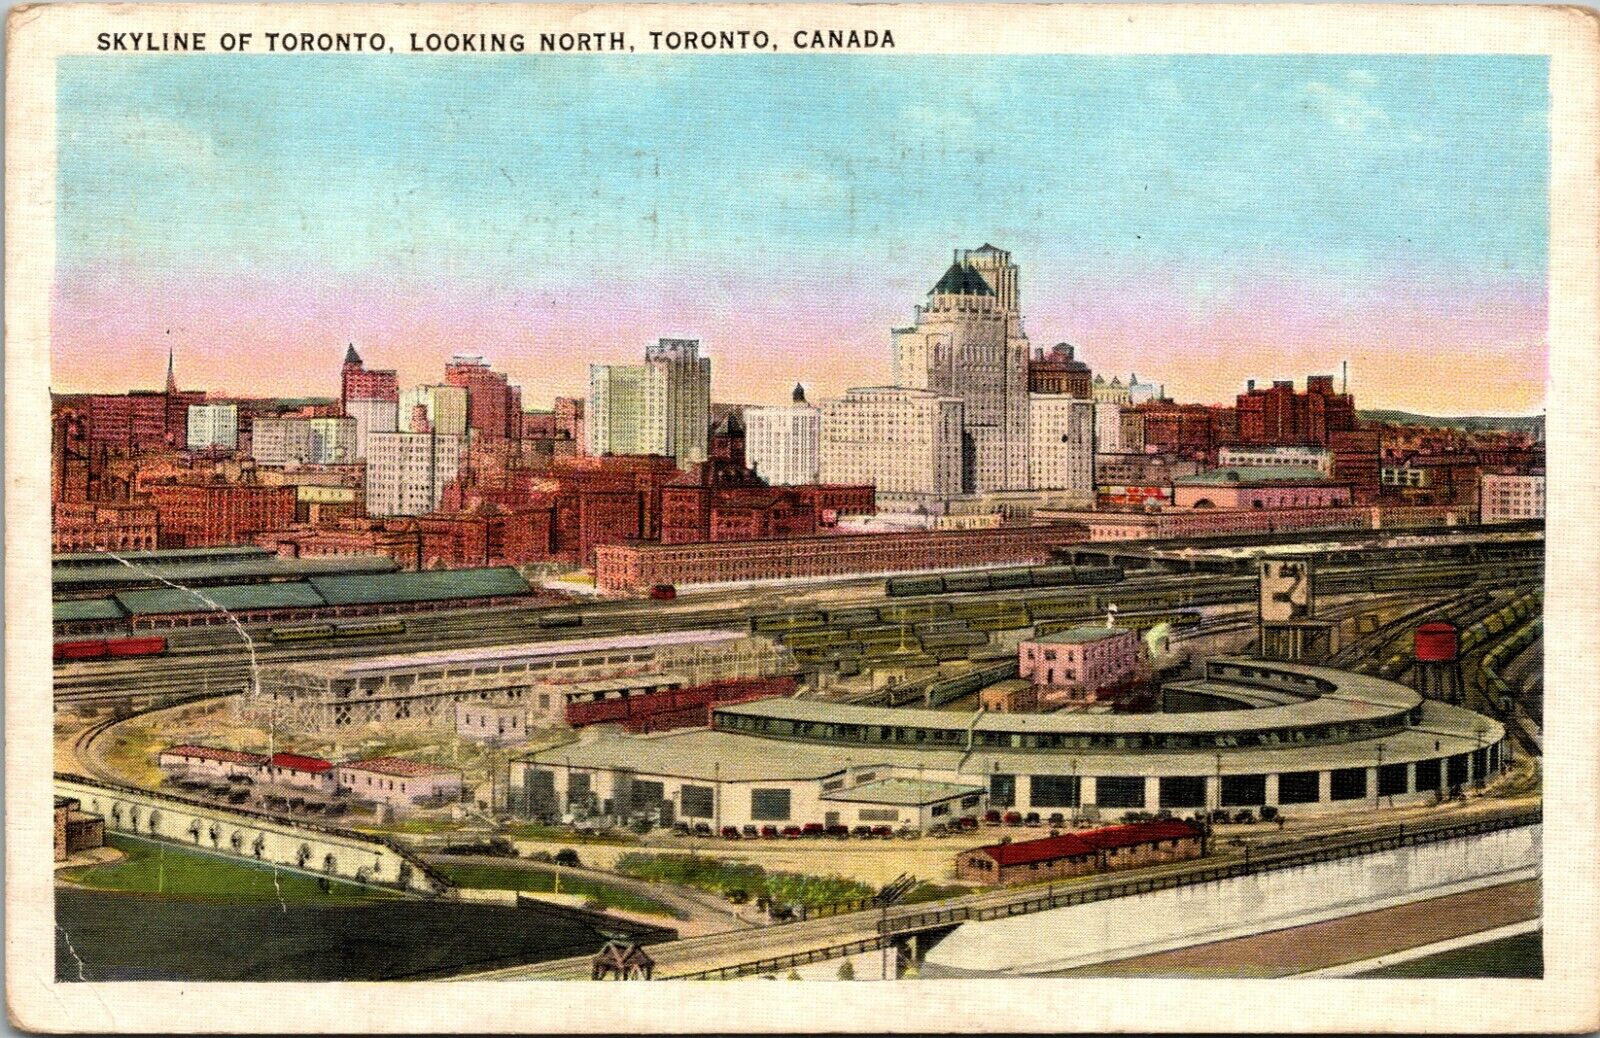 Skyline of Toronto, Looking South, Toronto, Ontario, Canada, 1937 Postcard